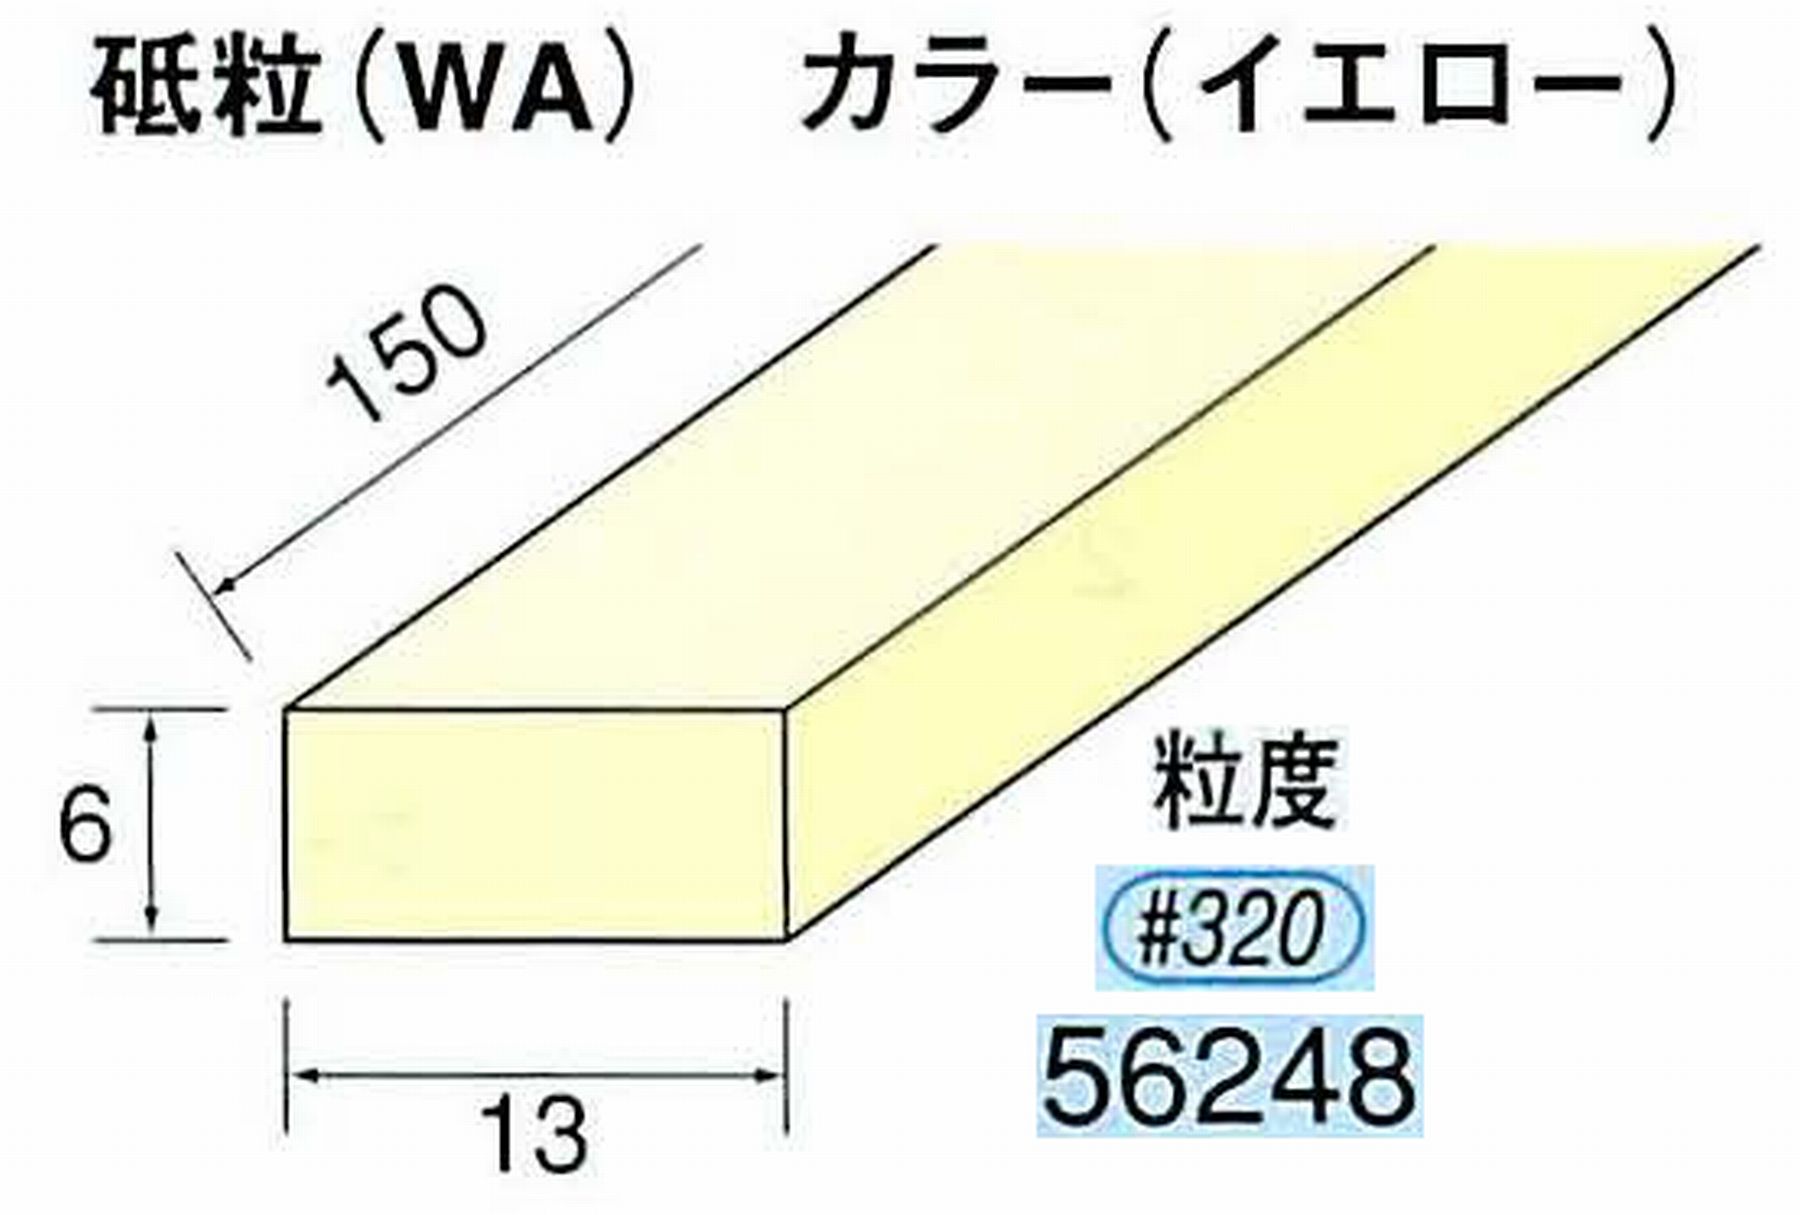 ナカニシ/NAKANISHI スティック砥石 イエロー・フィニッシュシリーズ 砥粒(WA) 56248